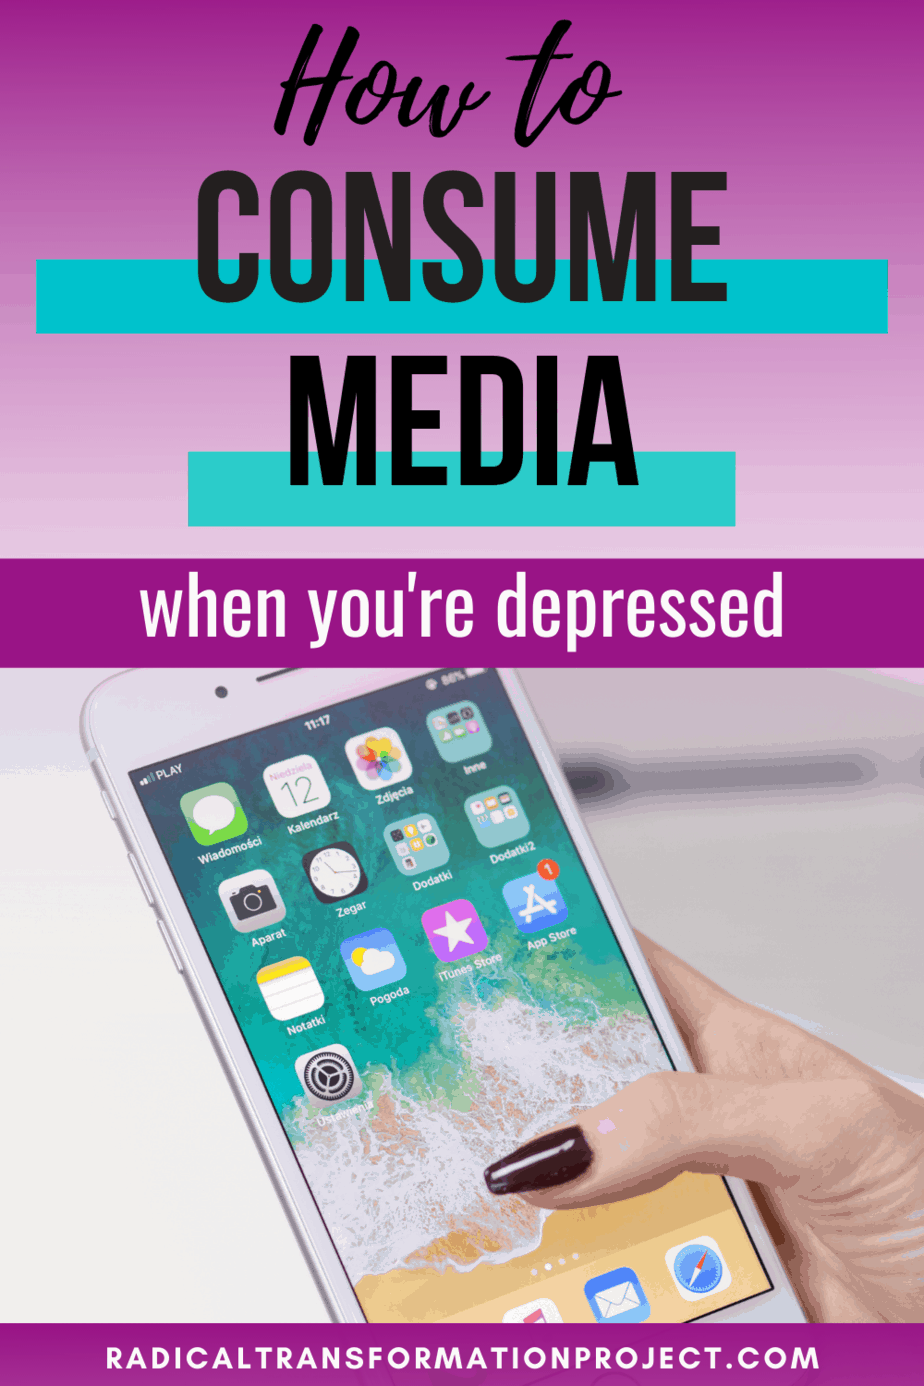 consuming media when depressed